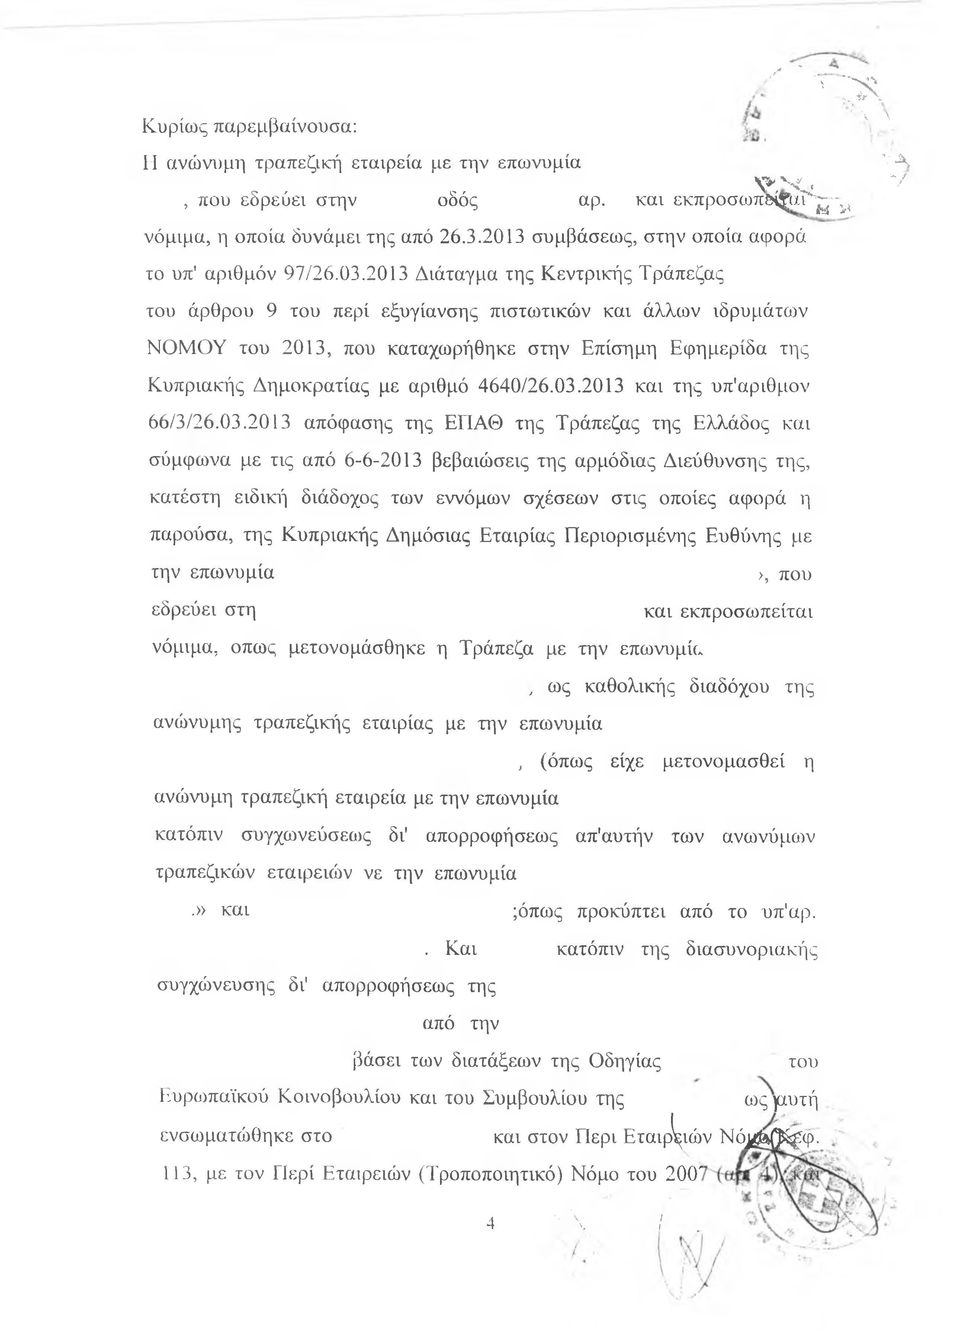 2013 Διάταγμα της Κεντρικής Τράπεζας του άρθρου 9 του περί εξυγίανσης πιστωτικών και άλλων ιδρυμάτων ΝΟΜΟΥ του 2013, που καταχωρήθηκε στην Επίσημη Εφημερίδα της Κυπριακής Δημοκρατίας με αριθμό